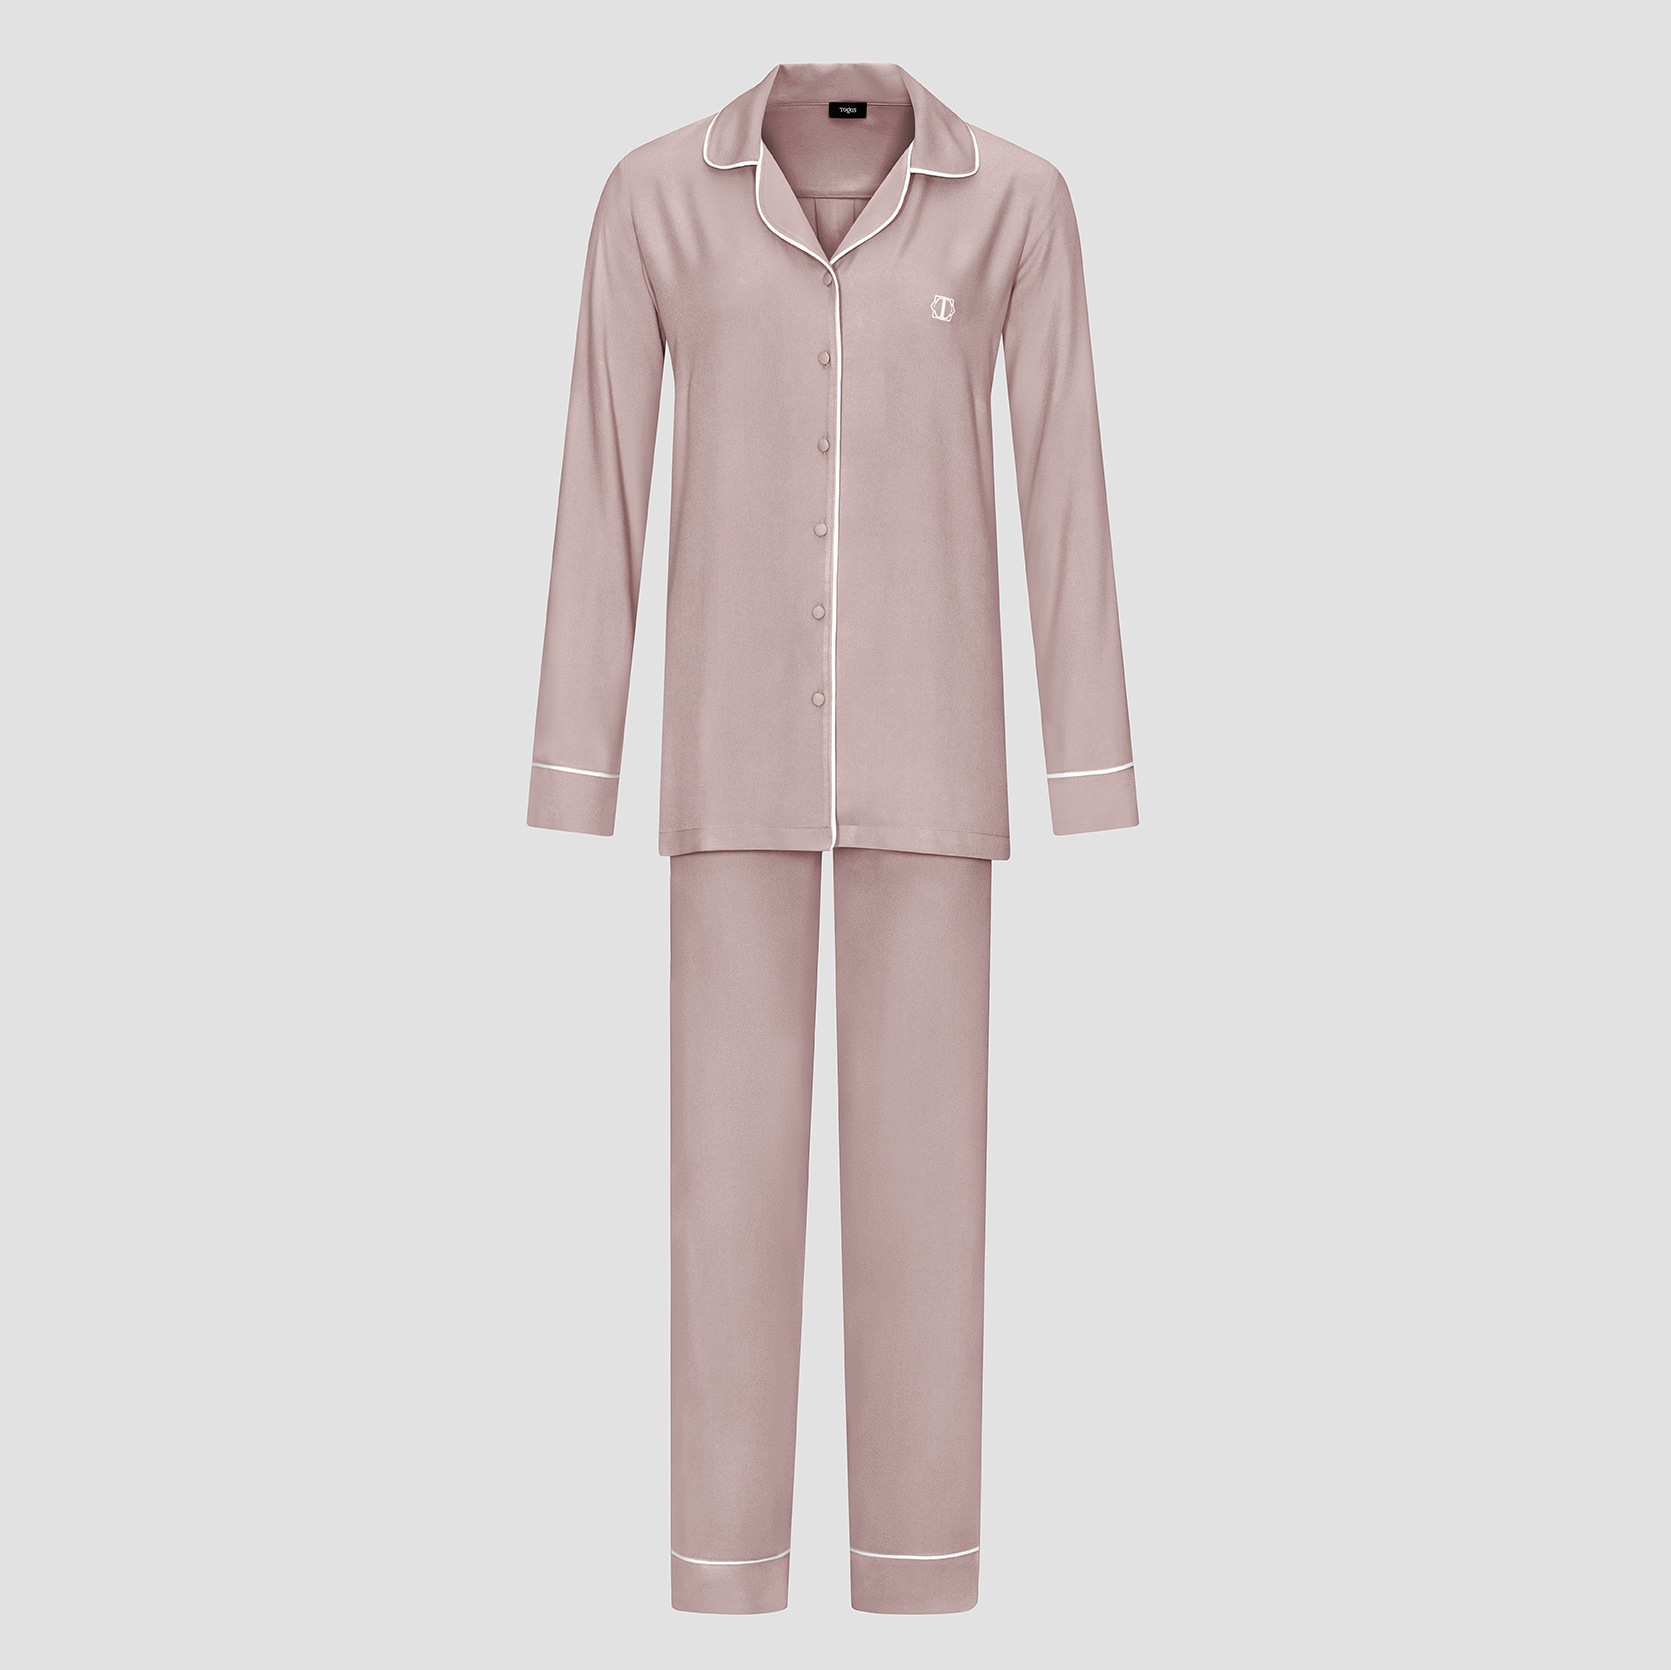 Пижама женская Togas Рамель розовая 2 предмета пижама рубашка брюки